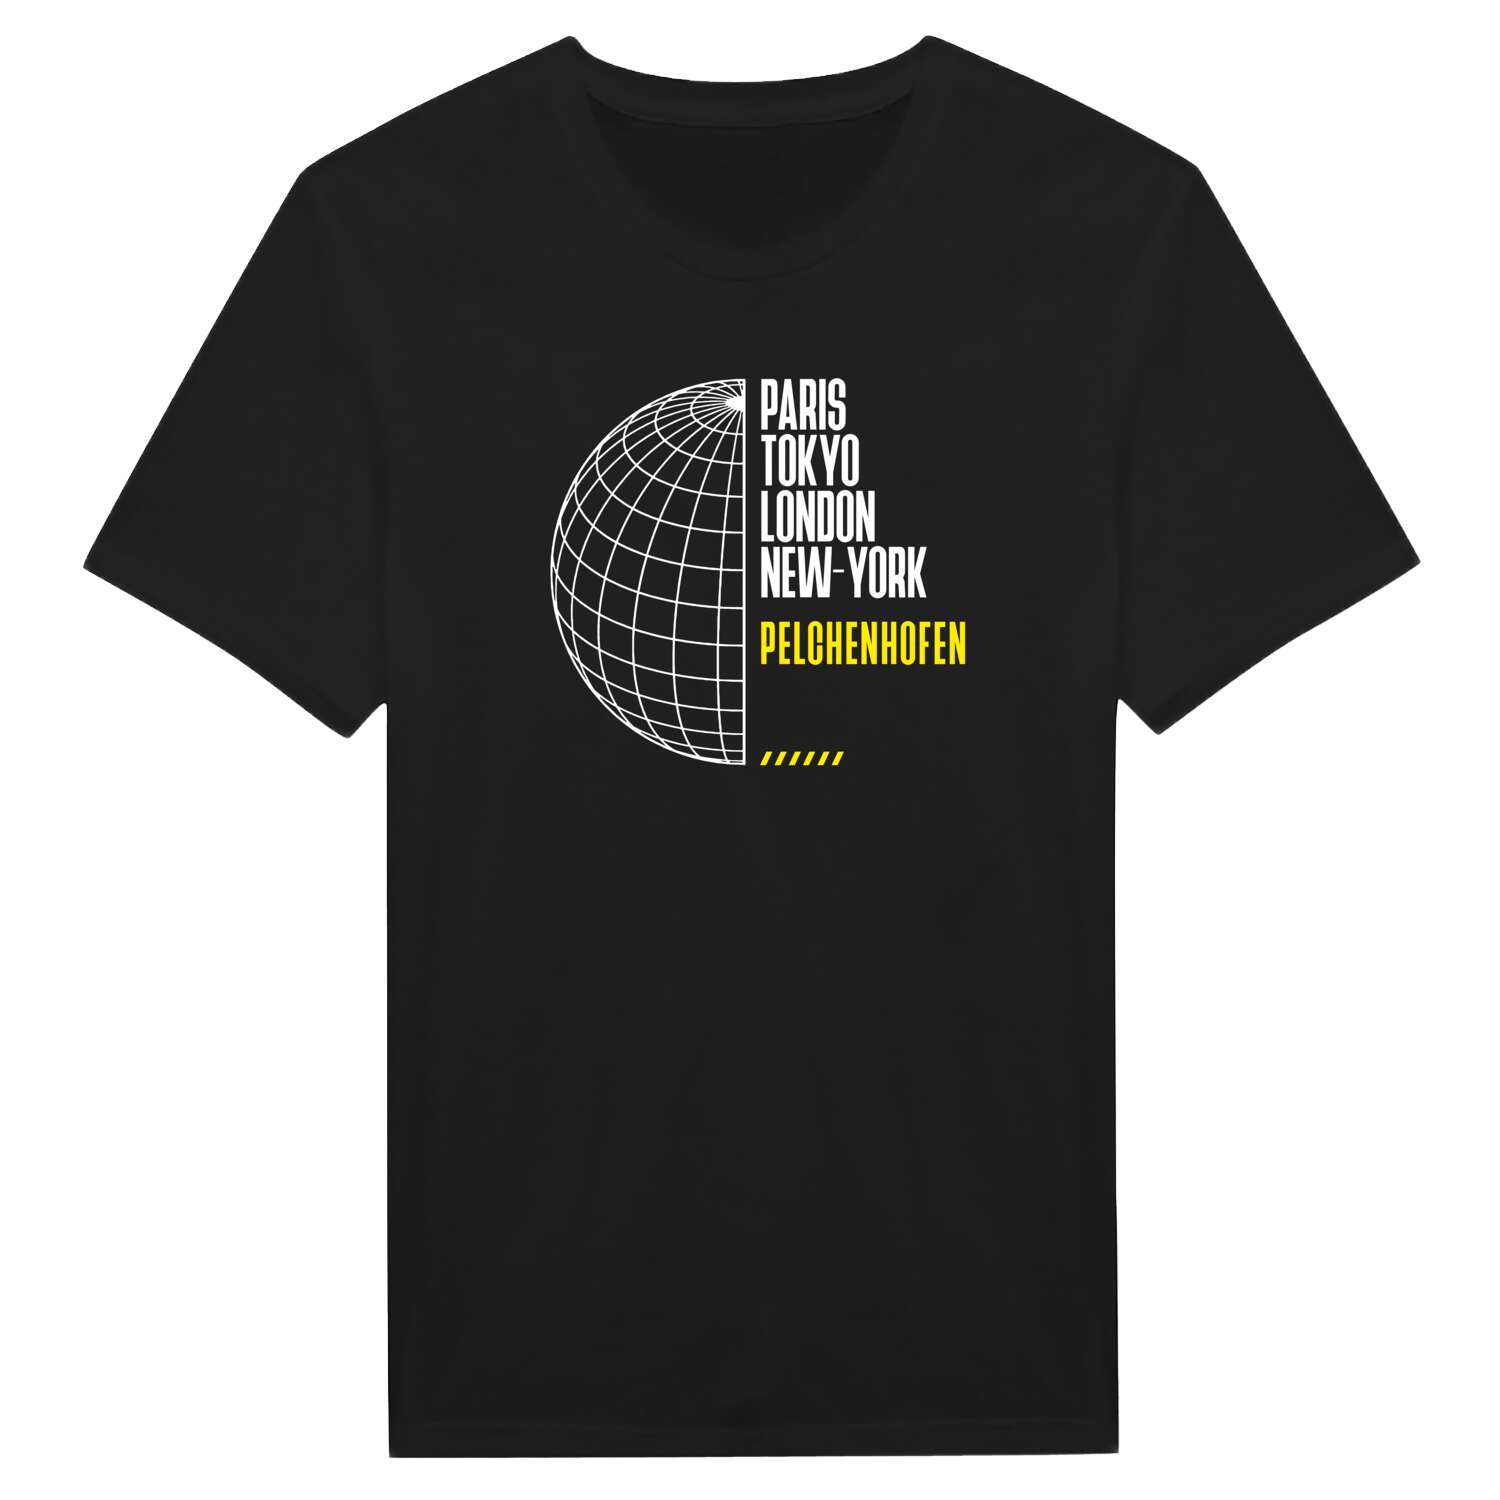 Pelchenhofen T-Shirt »Paris Tokyo London«